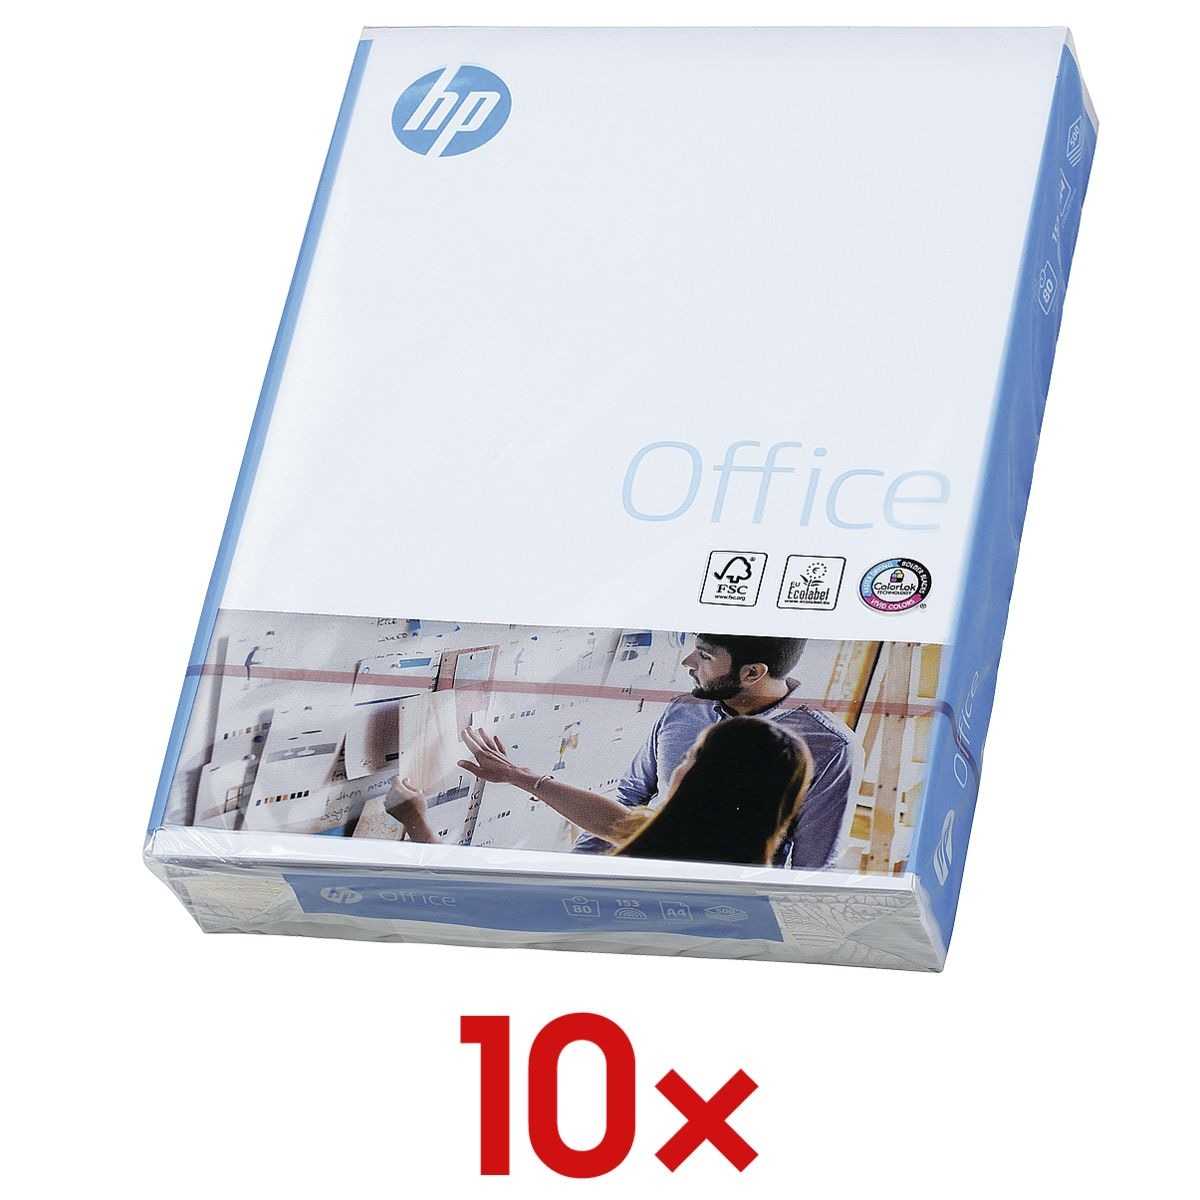 10x Multifunctioneel papier A4 HP Office - 5000 bladen (totaal), 80g/qm